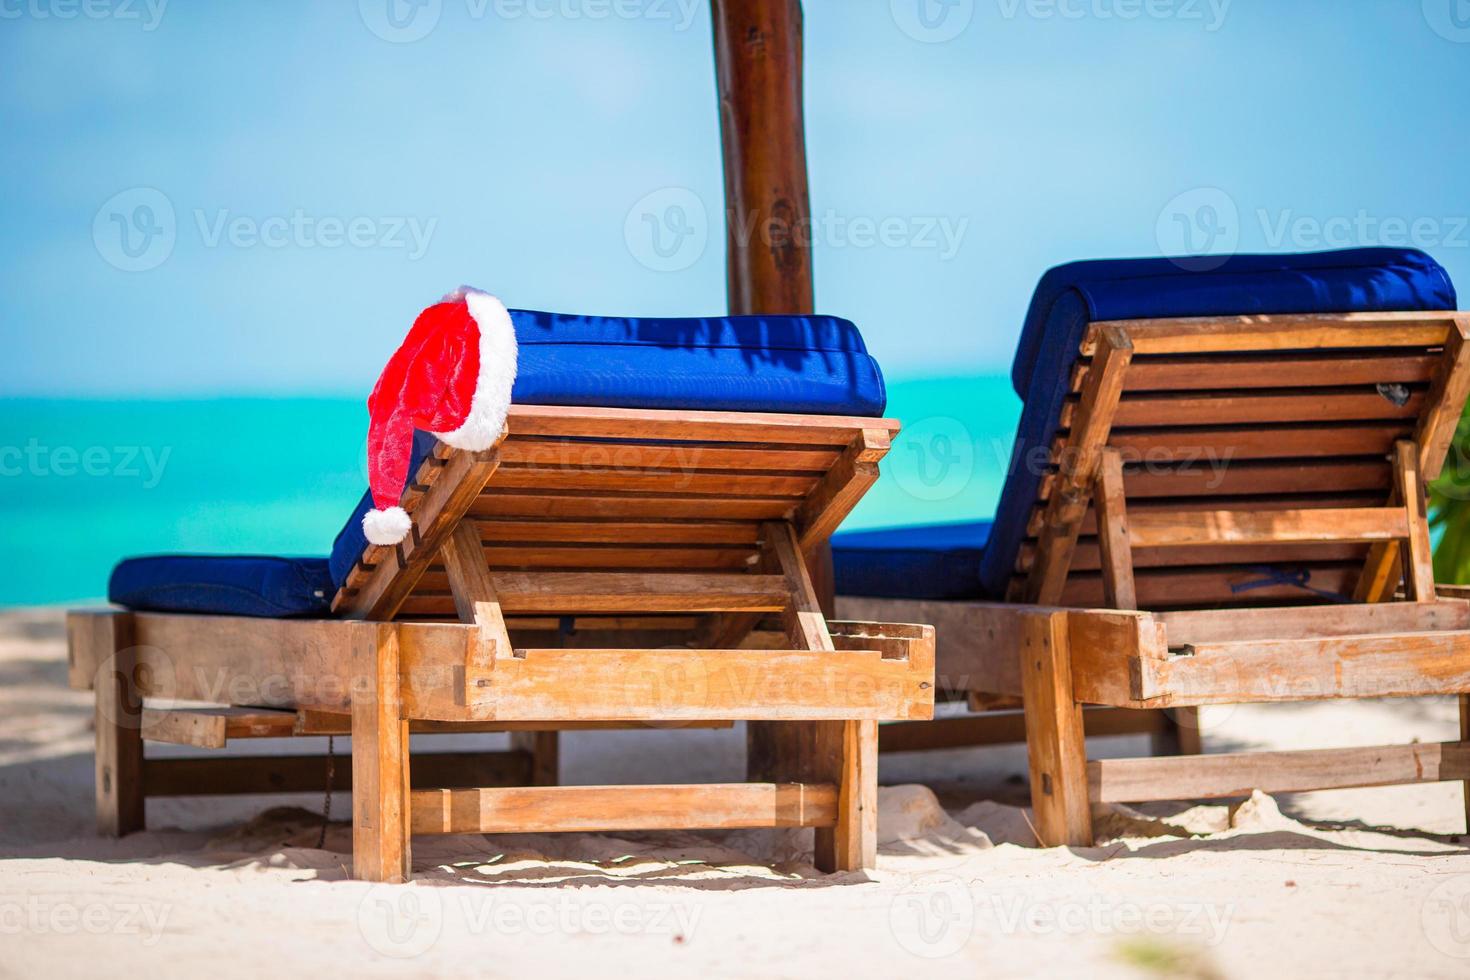 sombrero de santa claus en la tumbona de la playa con agua de mar turquesa y arena blanca. concepto de vacaciones de navidad foto